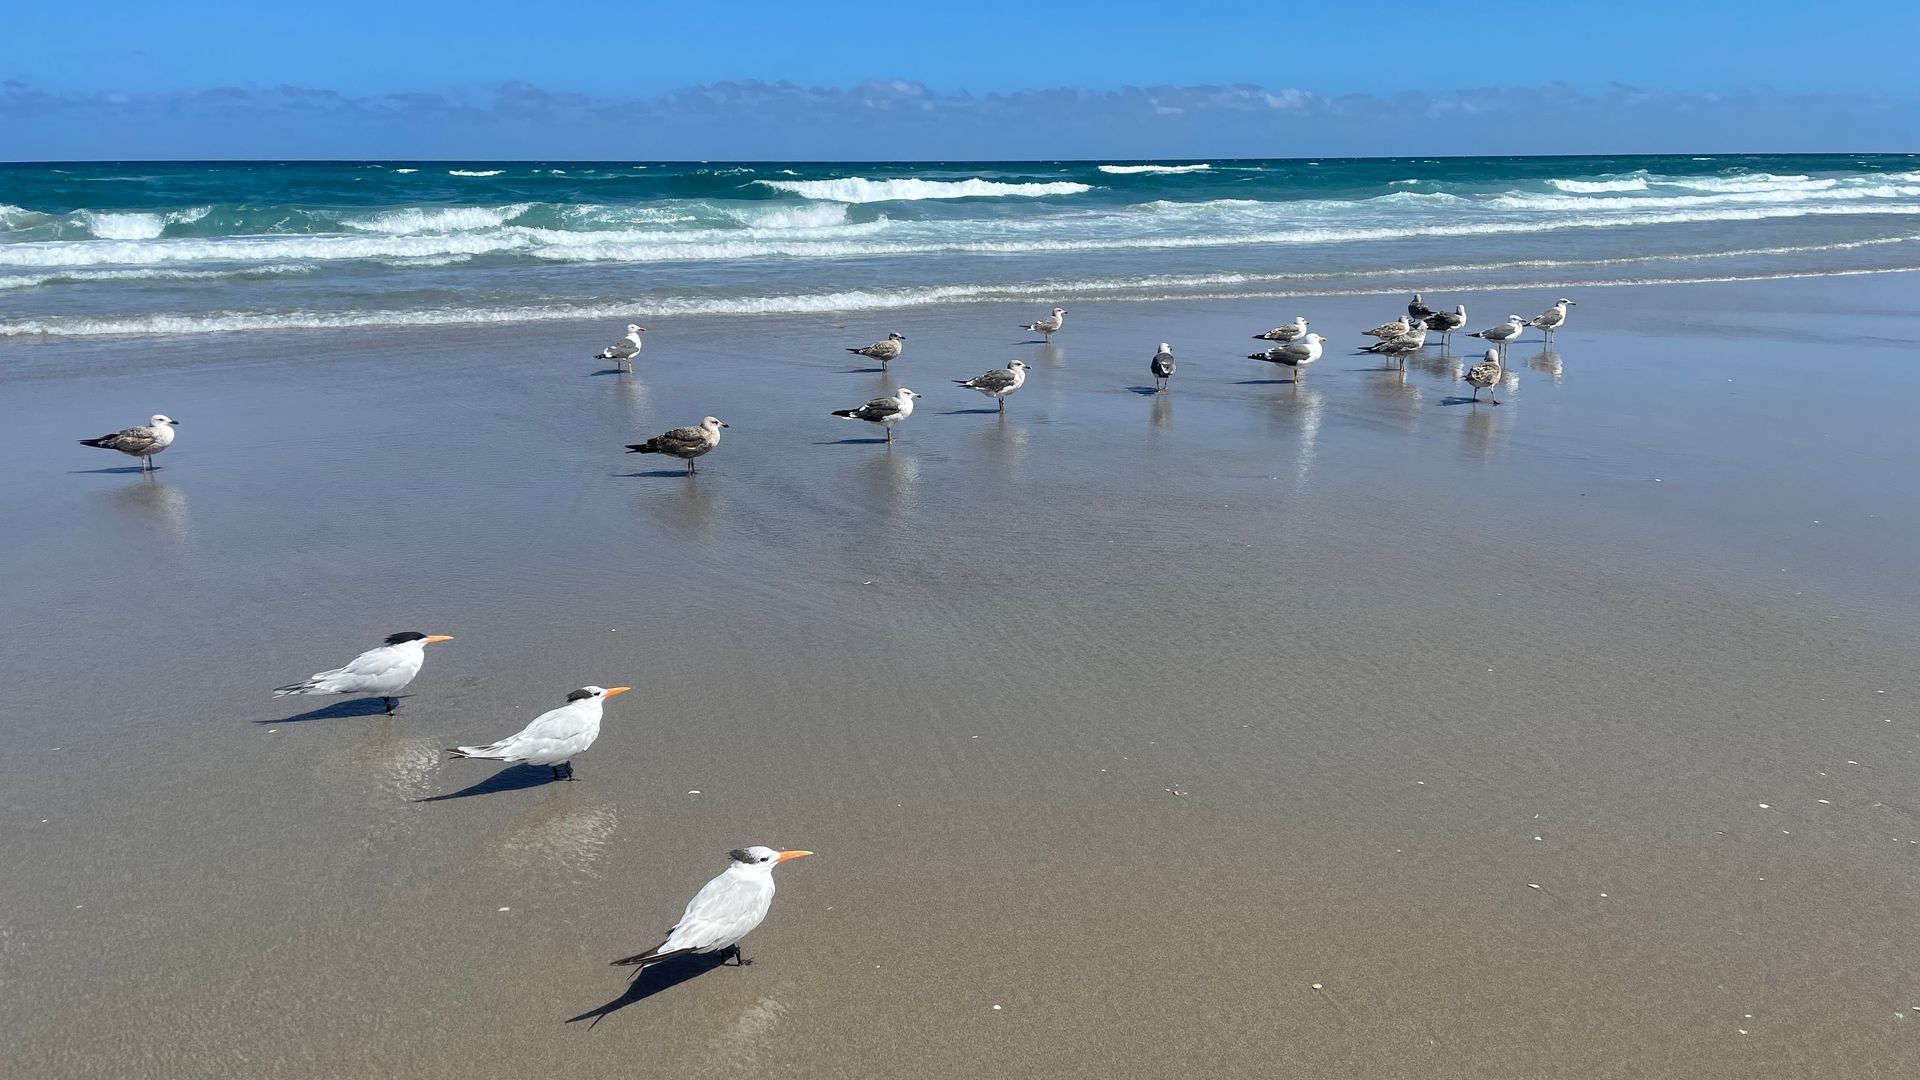 A flock of seagulls standing on a sandy beach near the ocean